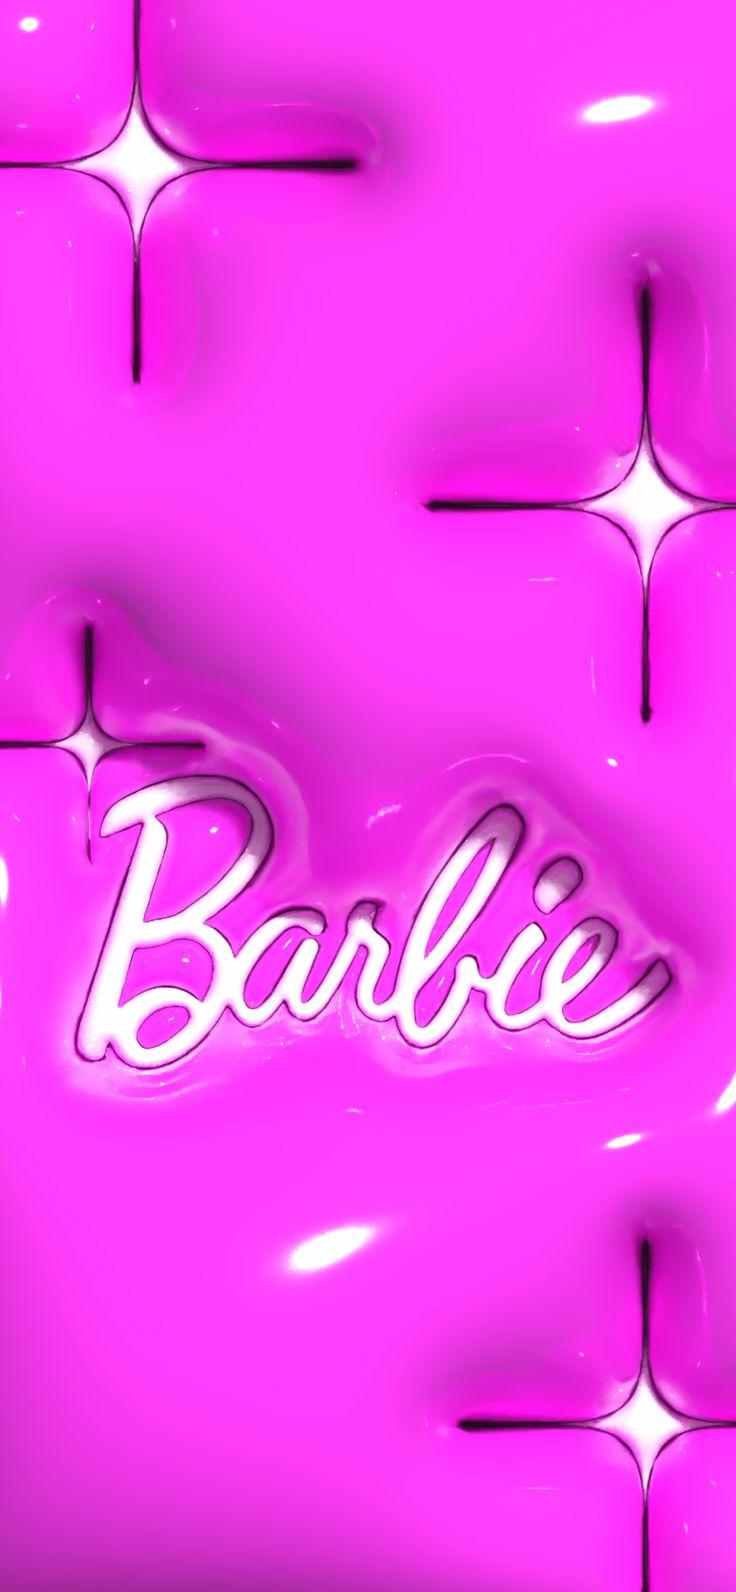 Barbiee 3d Wallpaper In Sparkle Geometric